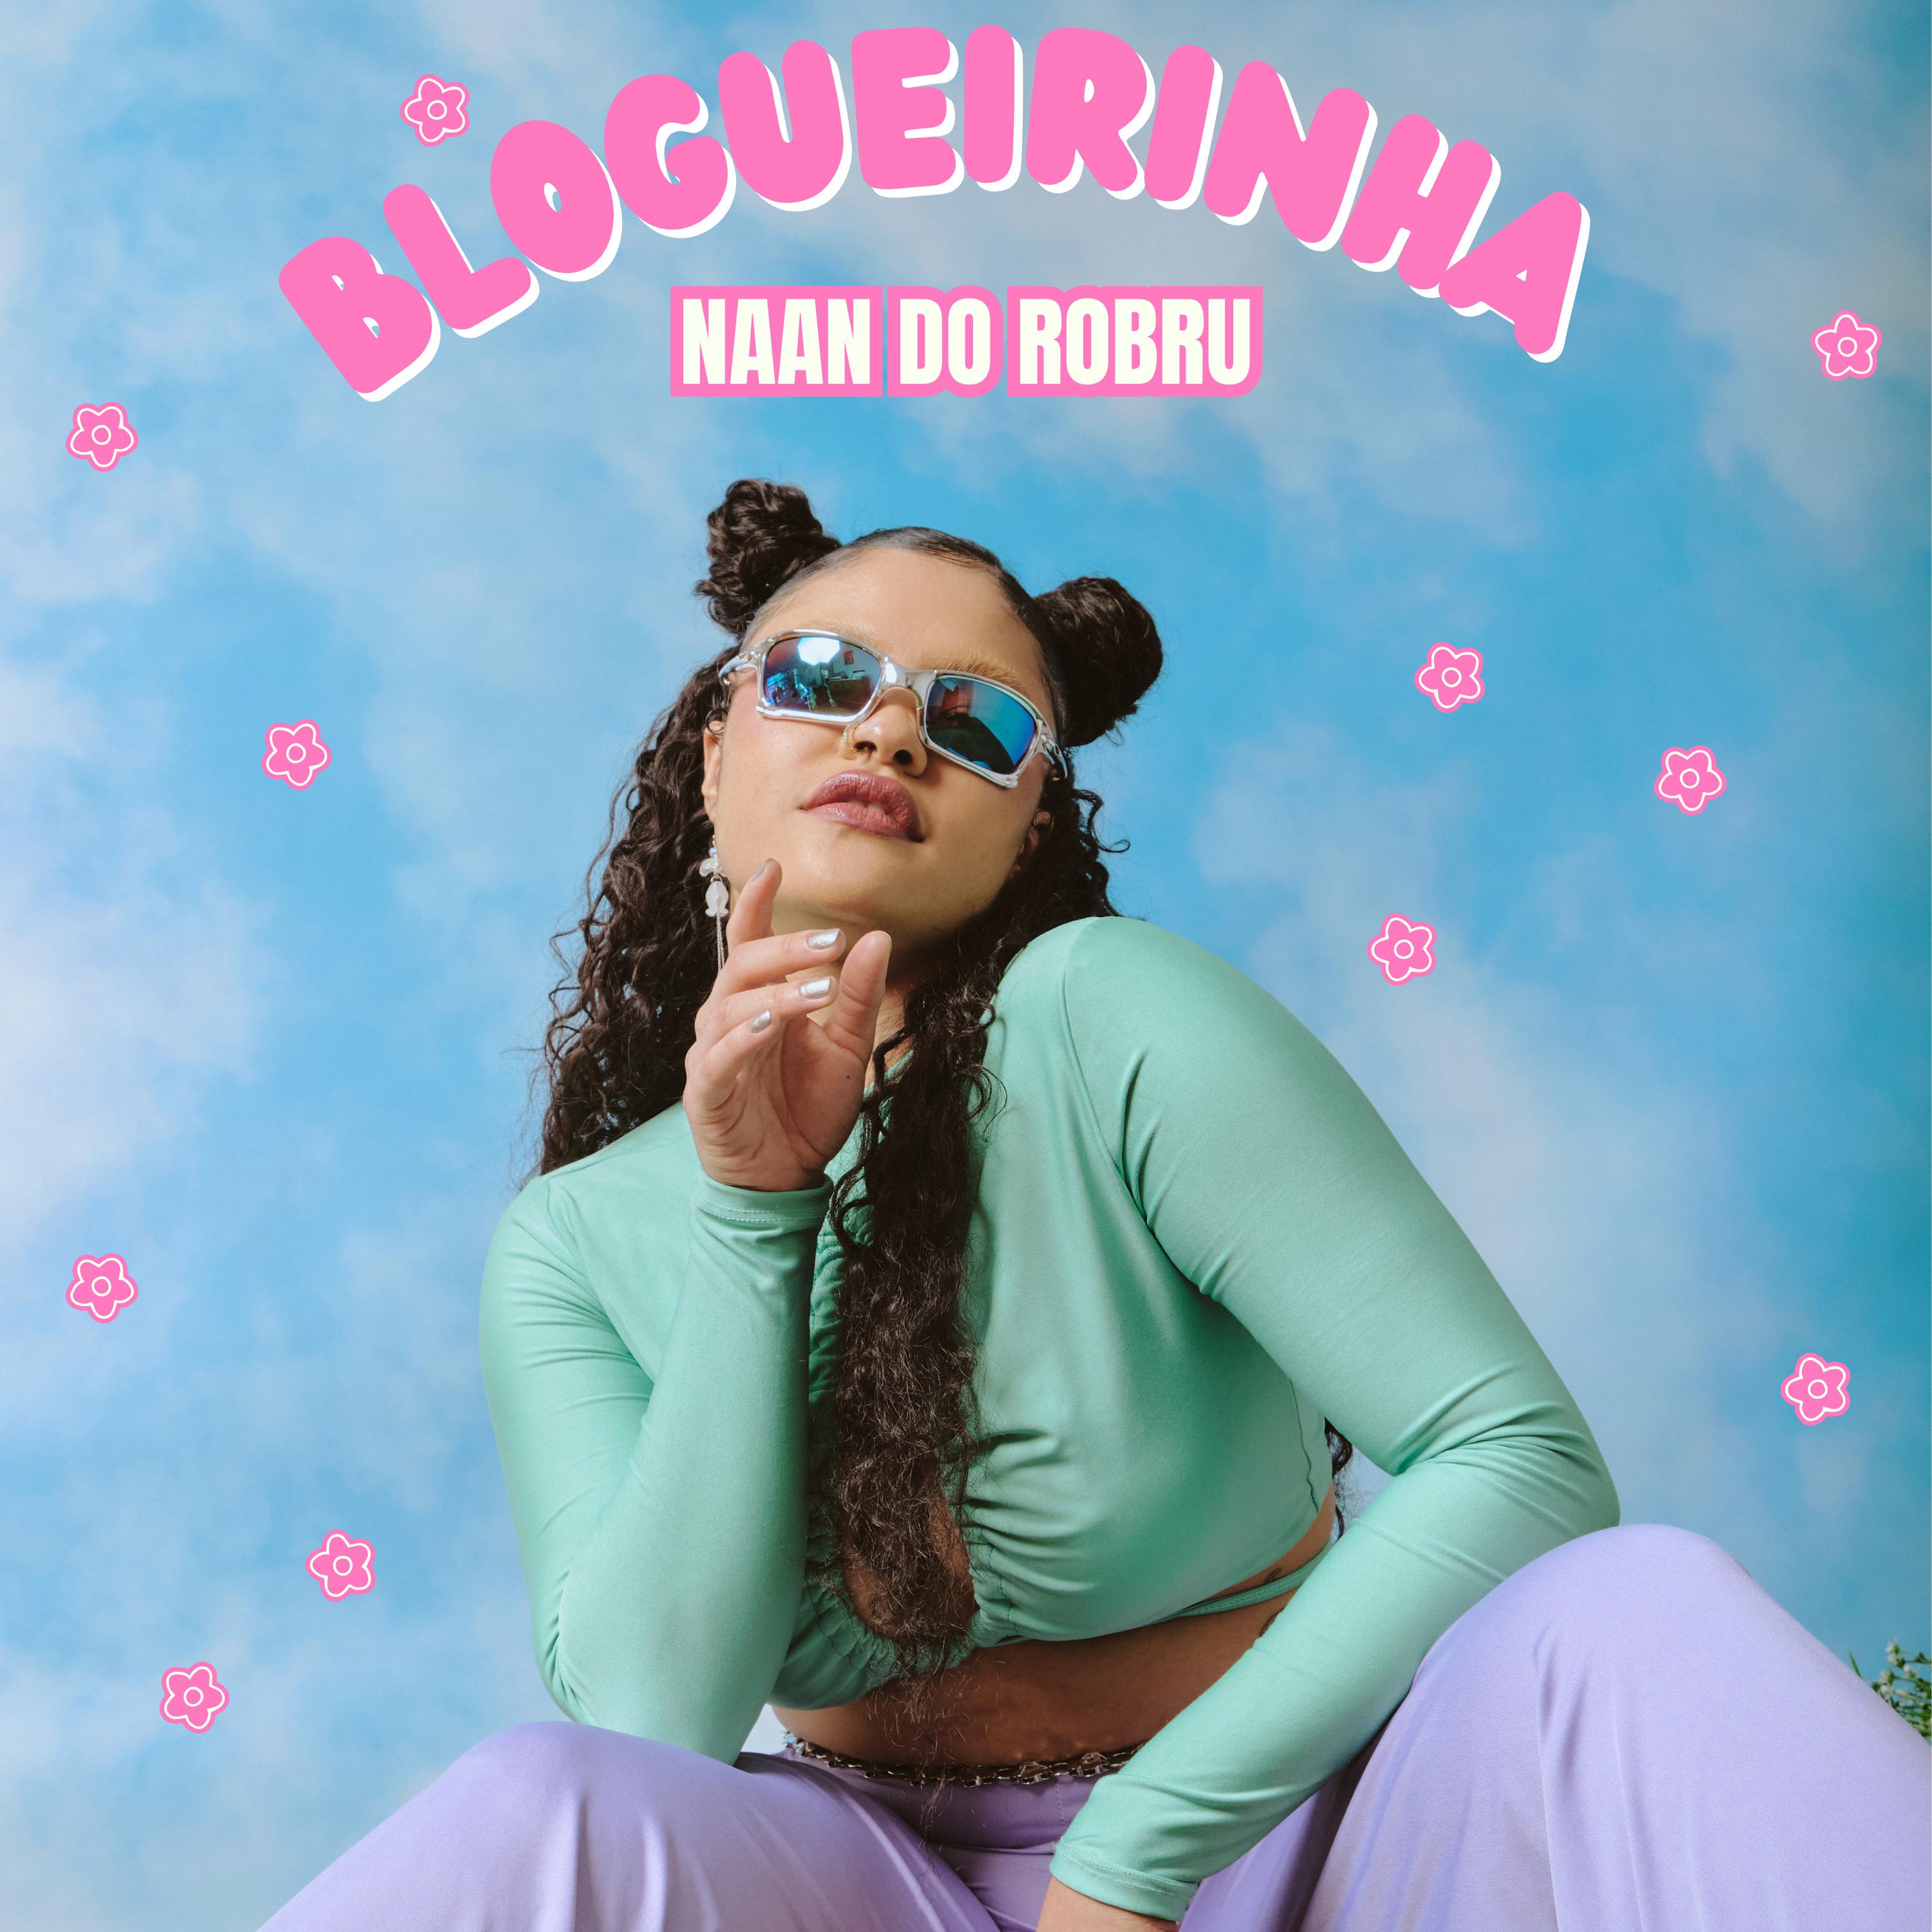 Постер альбома Blogueirinha